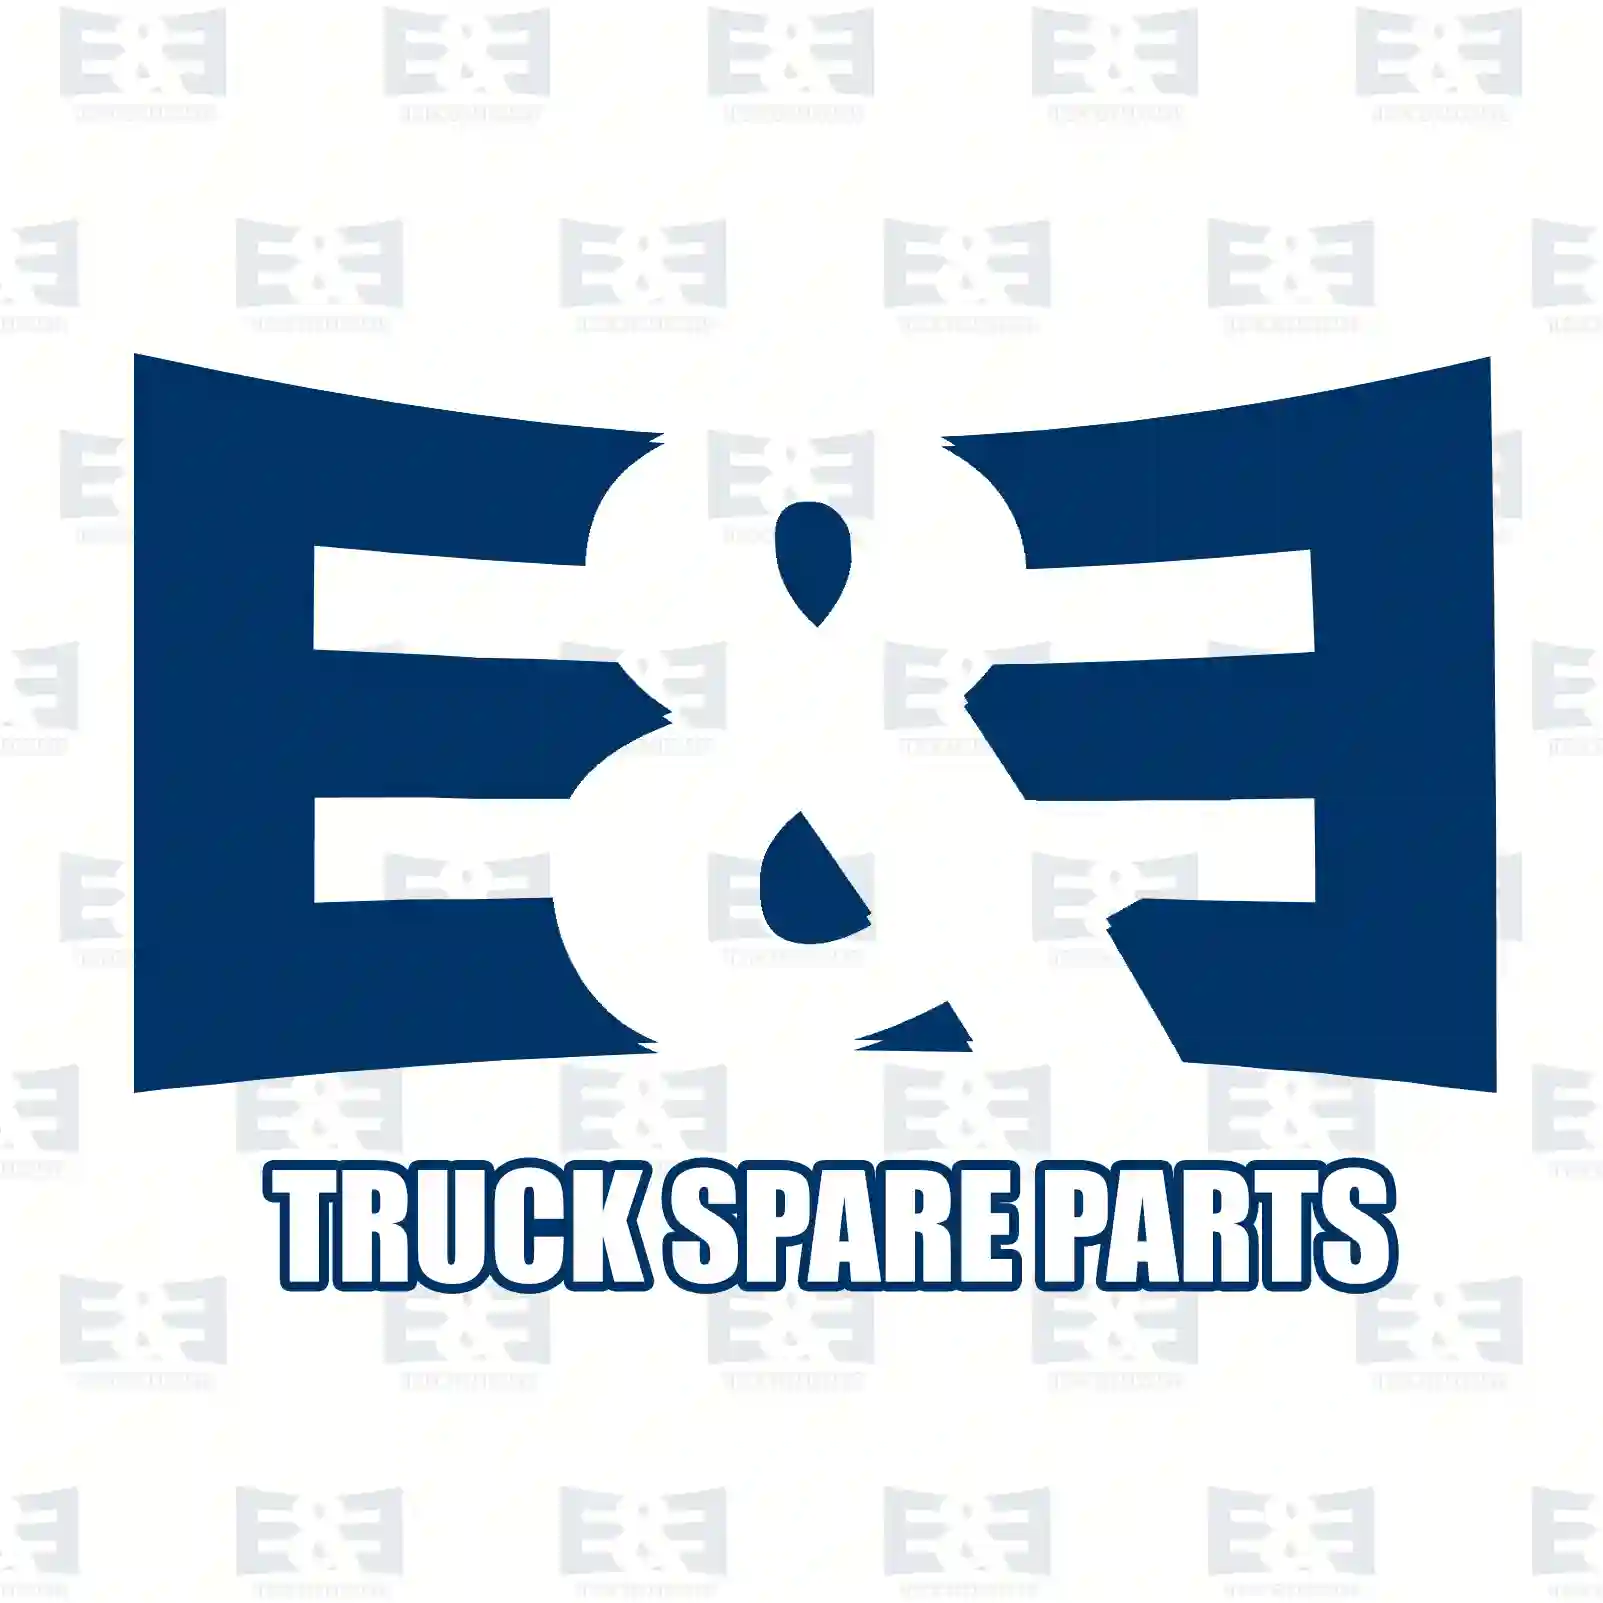 Bumper, rear, right, 2E2289734, 1637185180, 735685367, 1637185180 ||  2E2289734 E&E Truck Spare Parts | Truck Spare Parts, Auotomotive Spare Parts Bumper, rear, right, 2E2289734, 1637185180, 735685367, 1637185180 ||  2E2289734 E&E Truck Spare Parts | Truck Spare Parts, Auotomotive Spare Parts